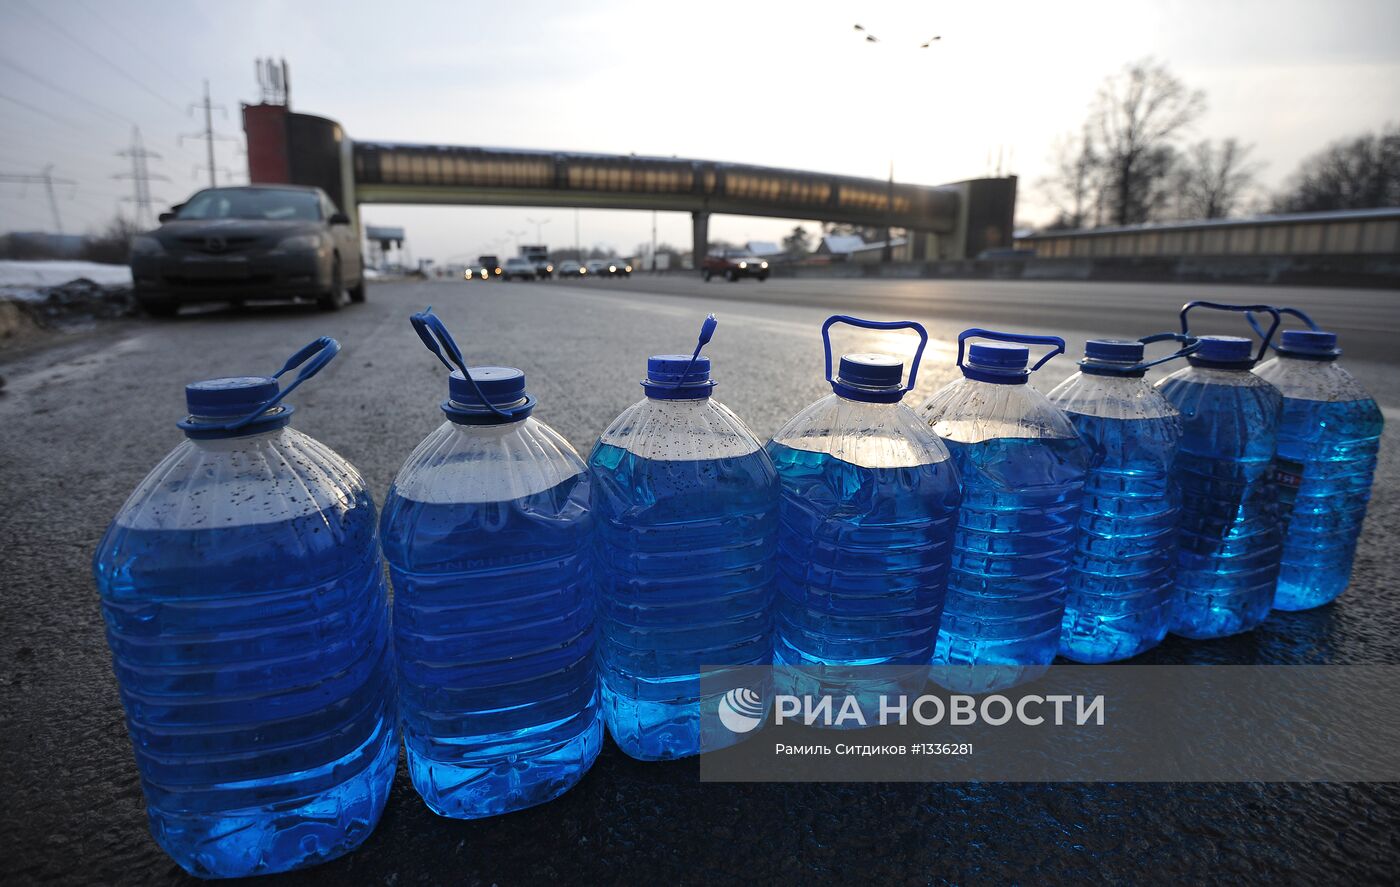 Несанкционированная продажа незамерзающей жидкости в Москве